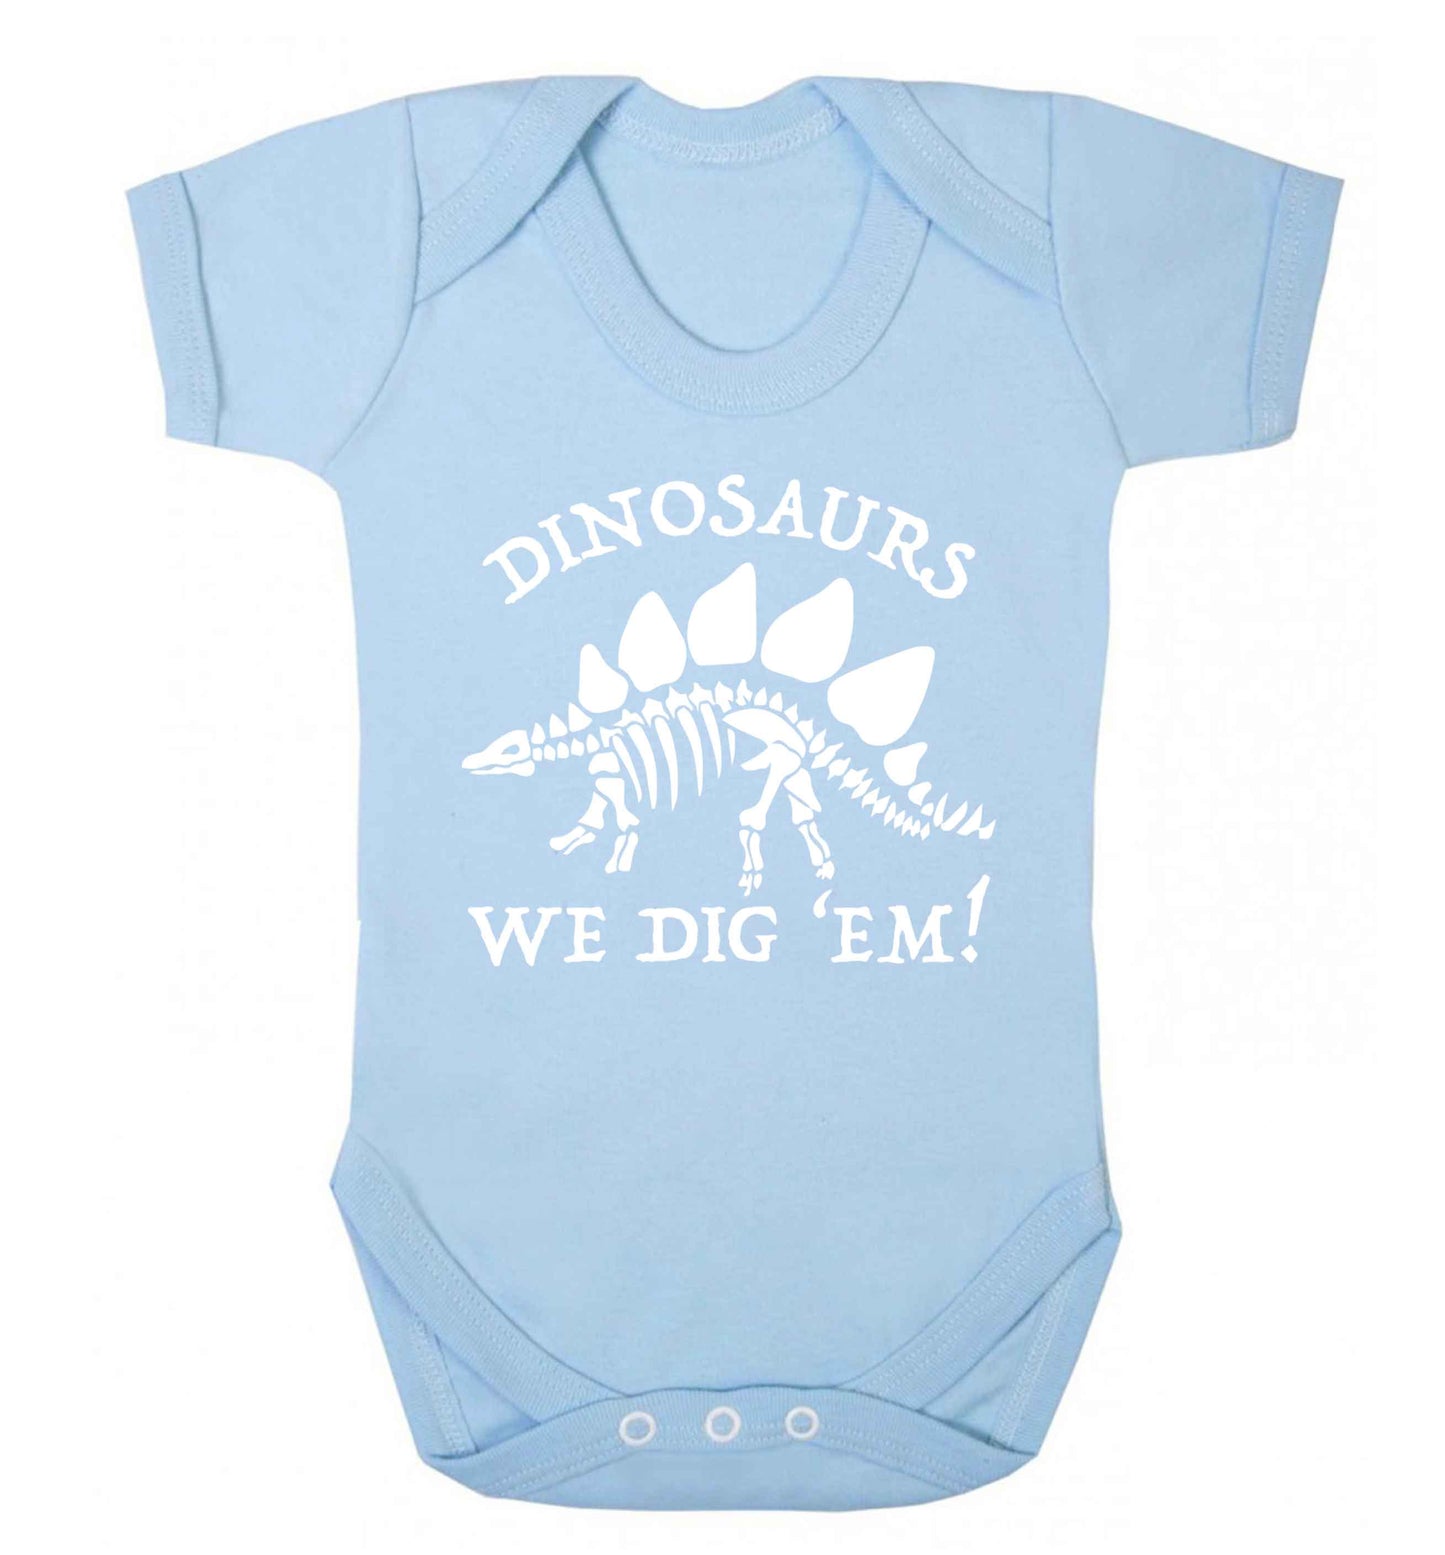 Dinosaurs we dig 'em! Baby Vest pale blue 18-24 months